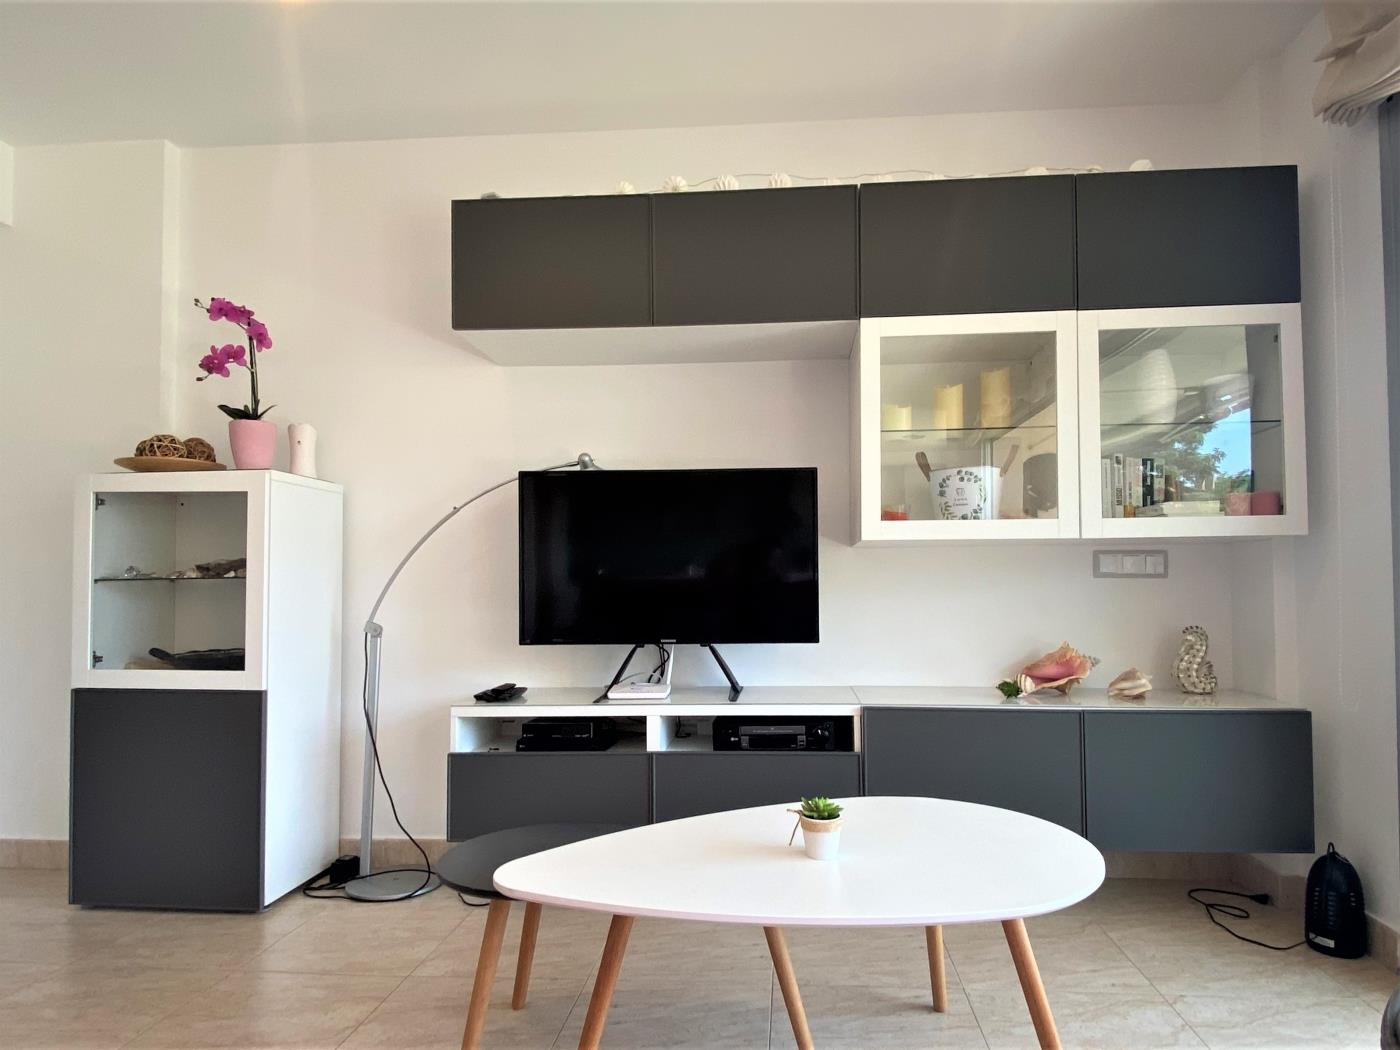 Nautilus-Wohnung mit Gemeinschaftspool, WLAN, Klimaanlage. in Sant Feliu de Guíxols